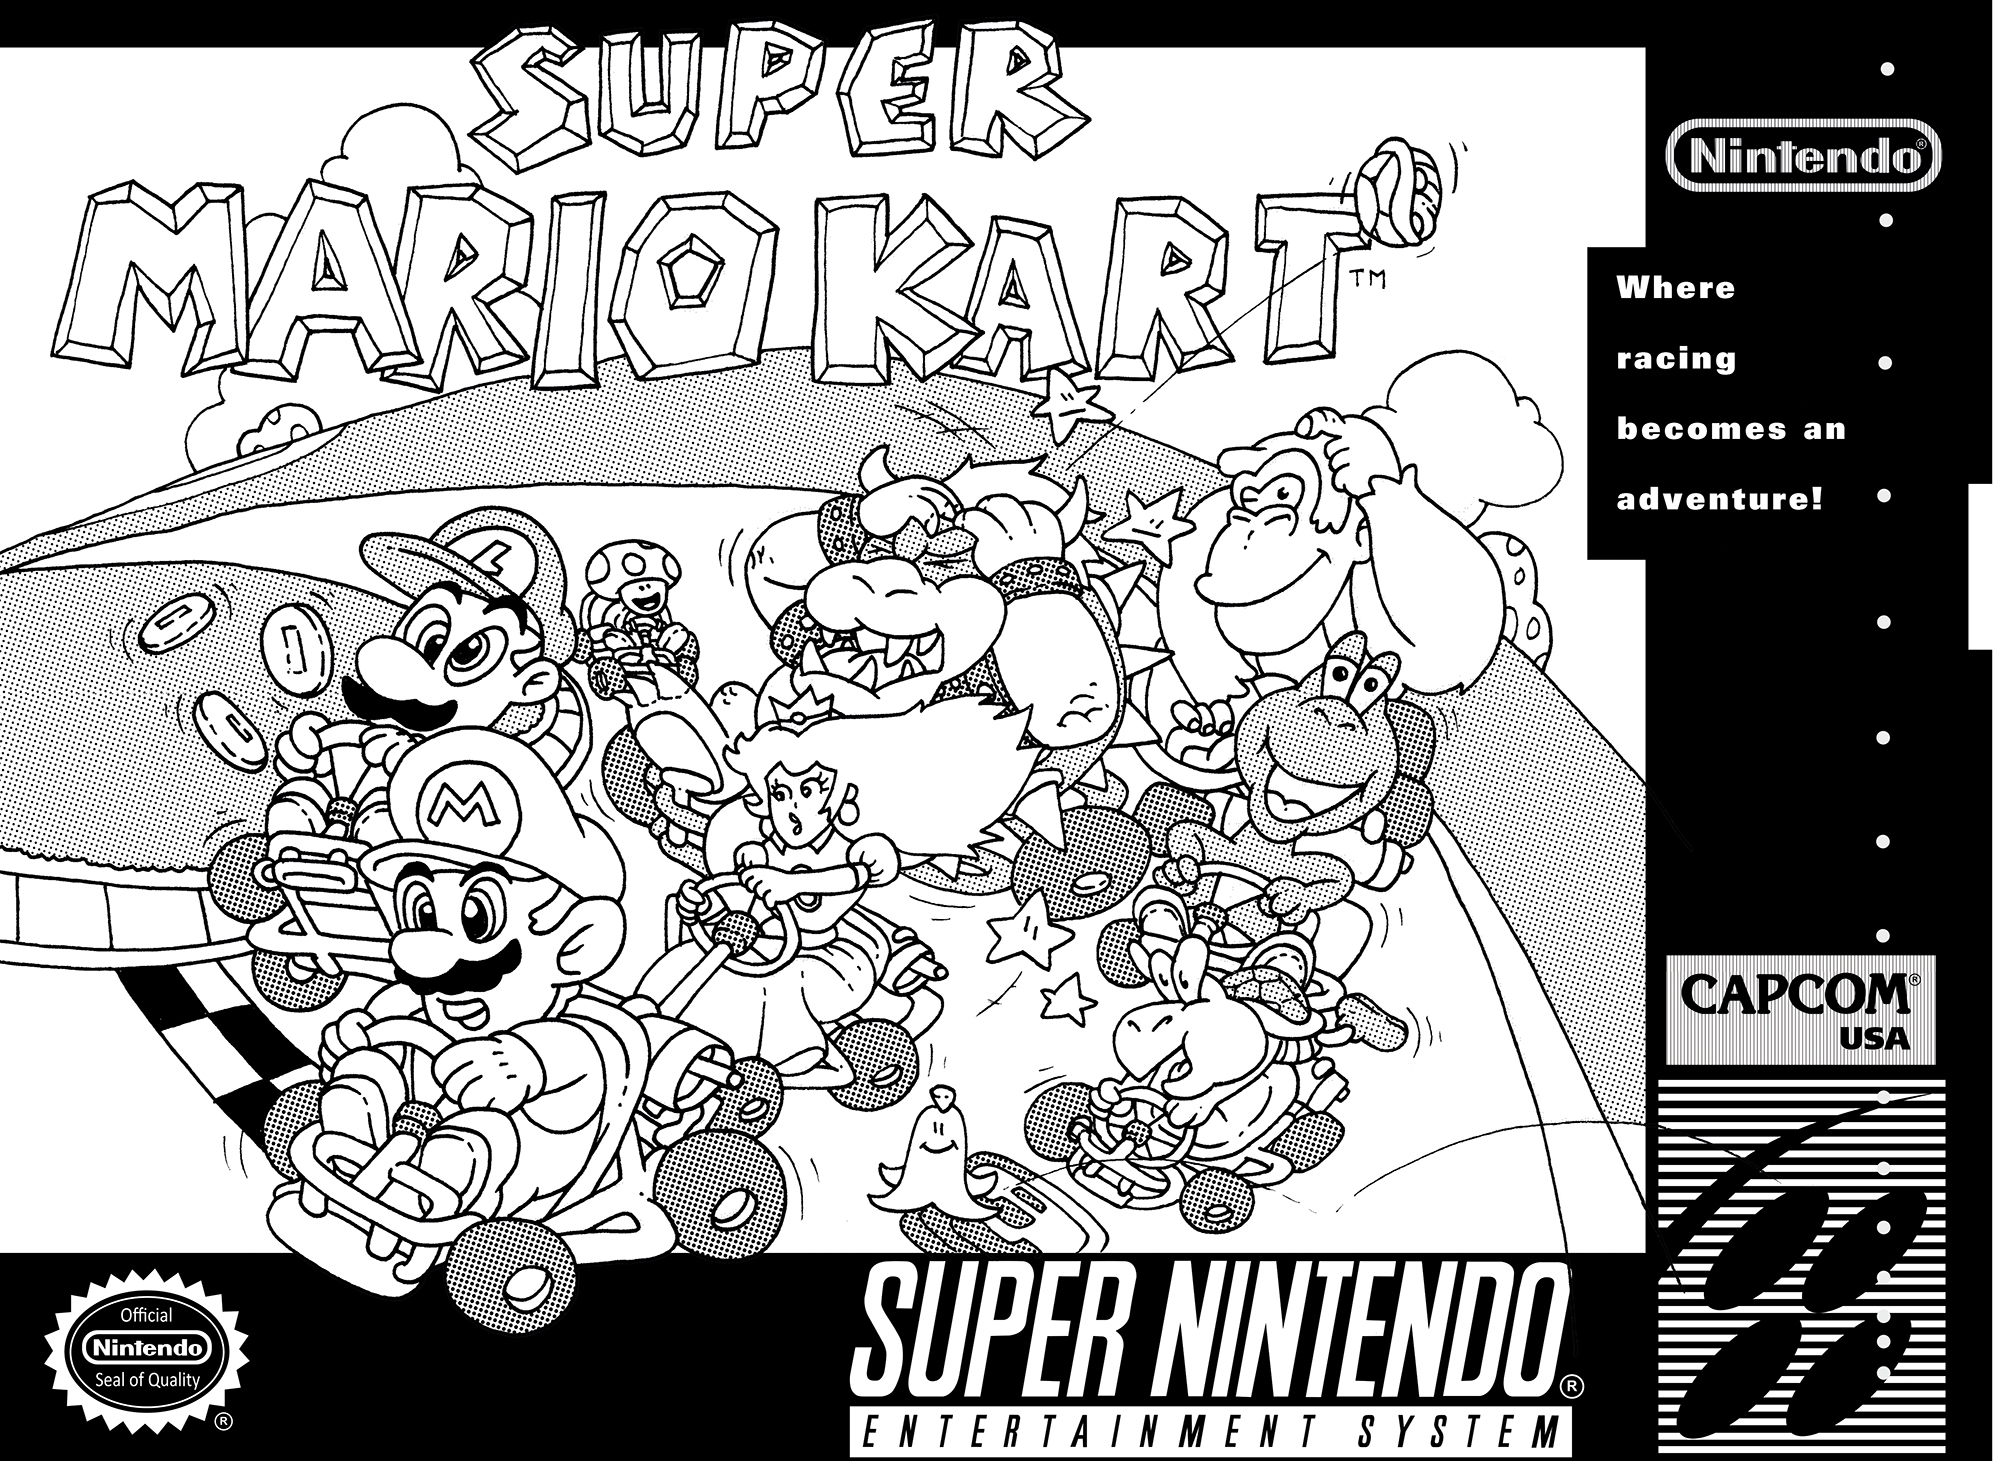 SNES Meisterstudien „Super Mario Kart“ Serigraphie auf Karton (handgedruckt), limitierte Auflage, 8 Stück, 2014, 30×40